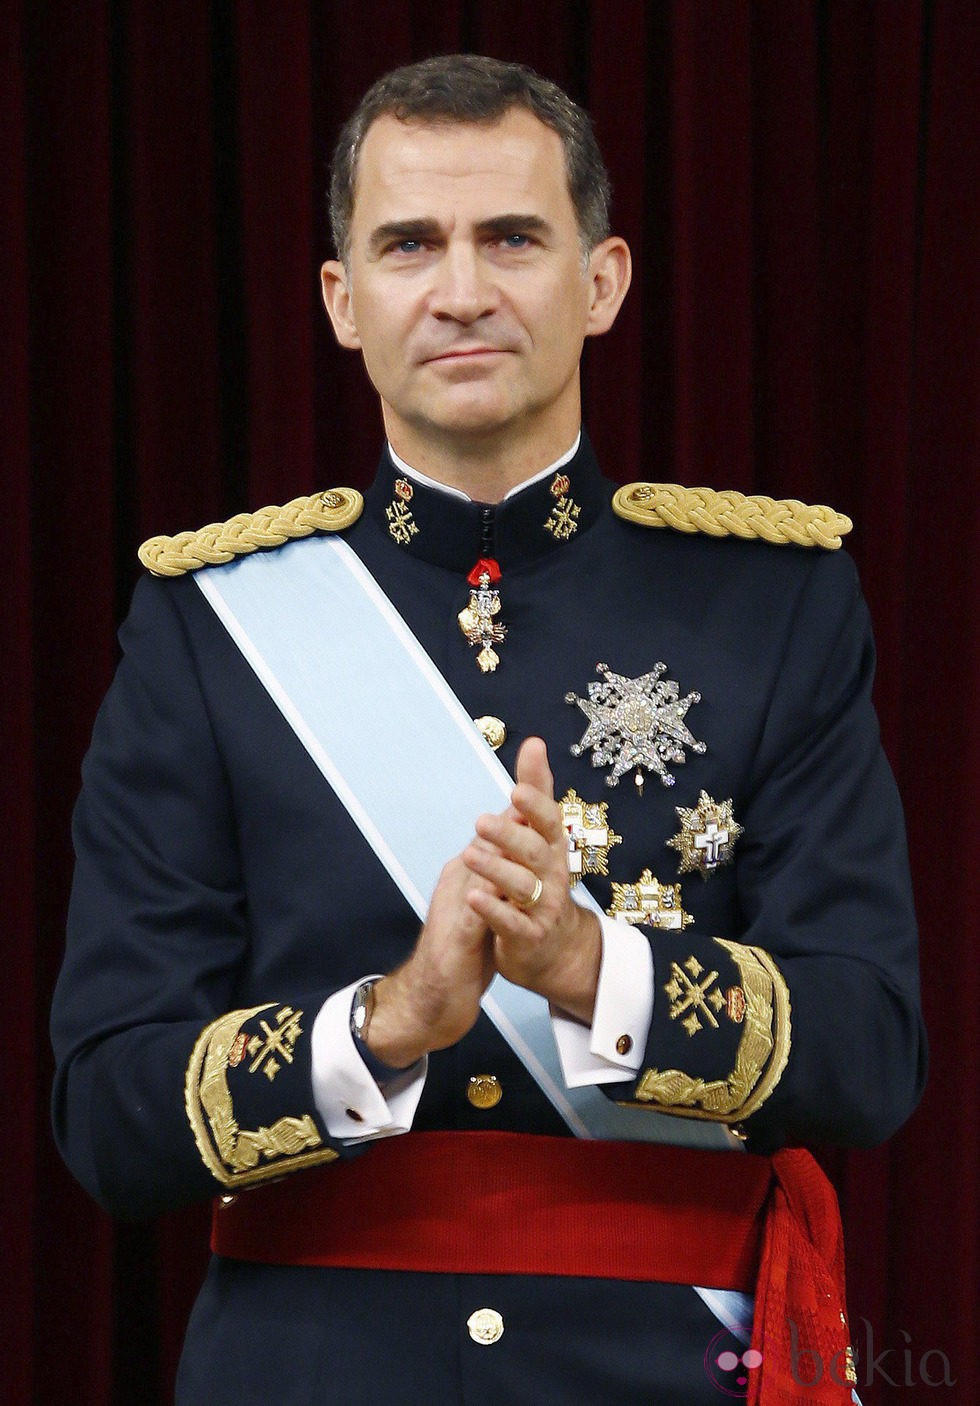 El Rey Felipe VI tras su primer discurso como Rey de España